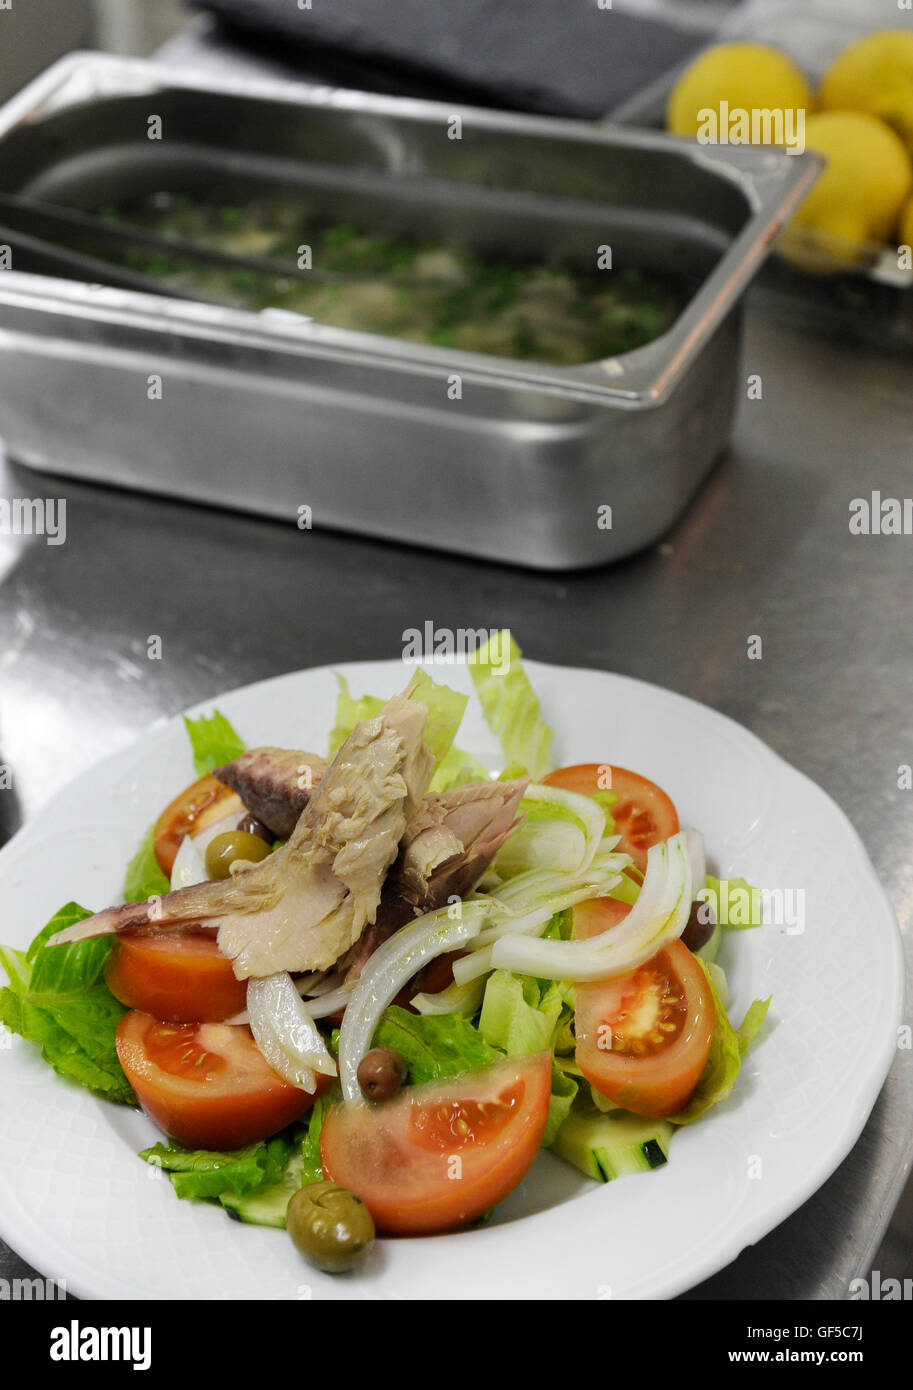 Schüssel mit einem mediterranen Salat auf Sideboard in Restaurantküche Stockfoto